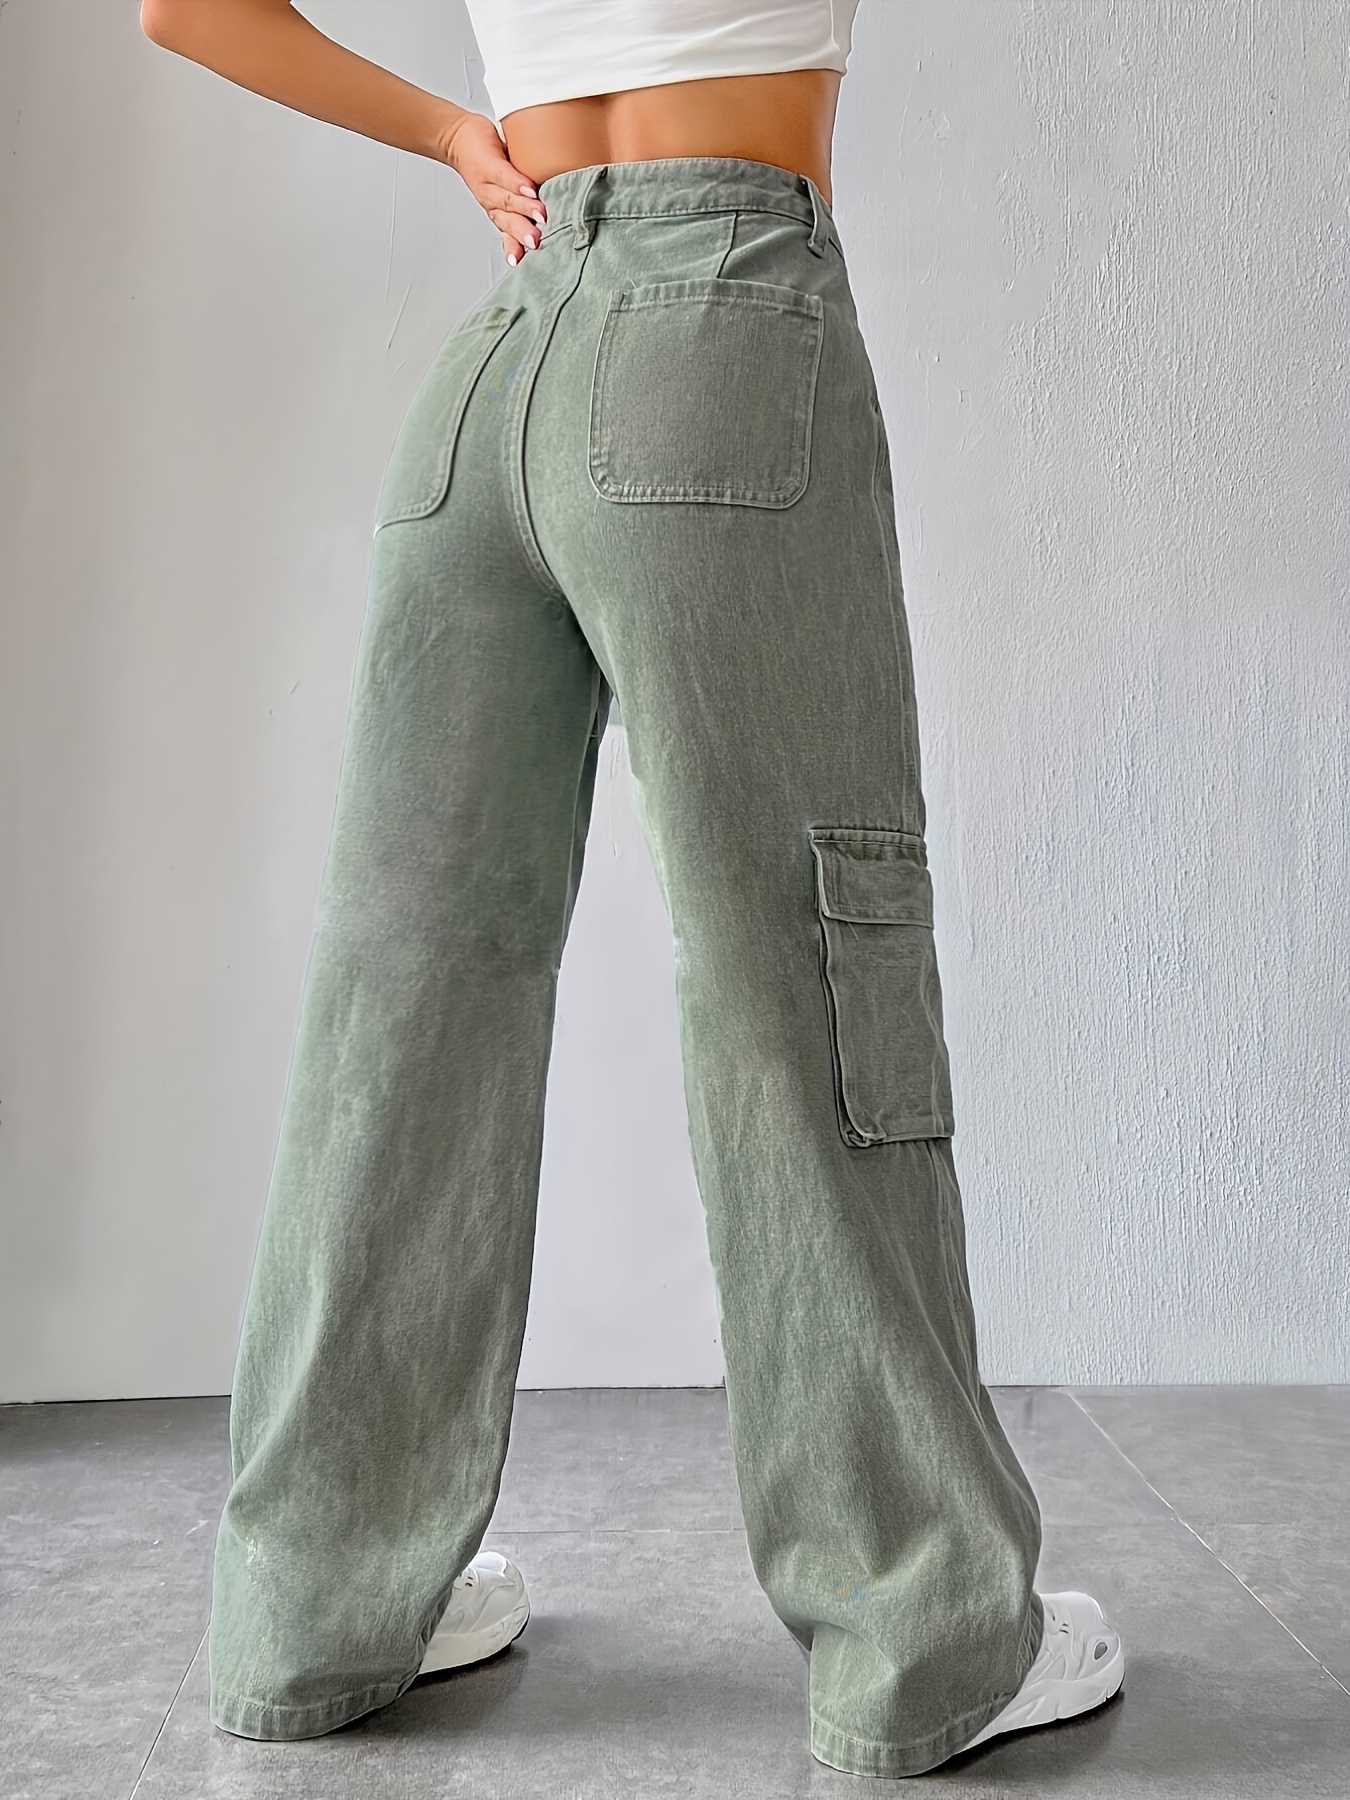  High Waist Stretch Cargo Pants Women, Baggy Cargo Jeans